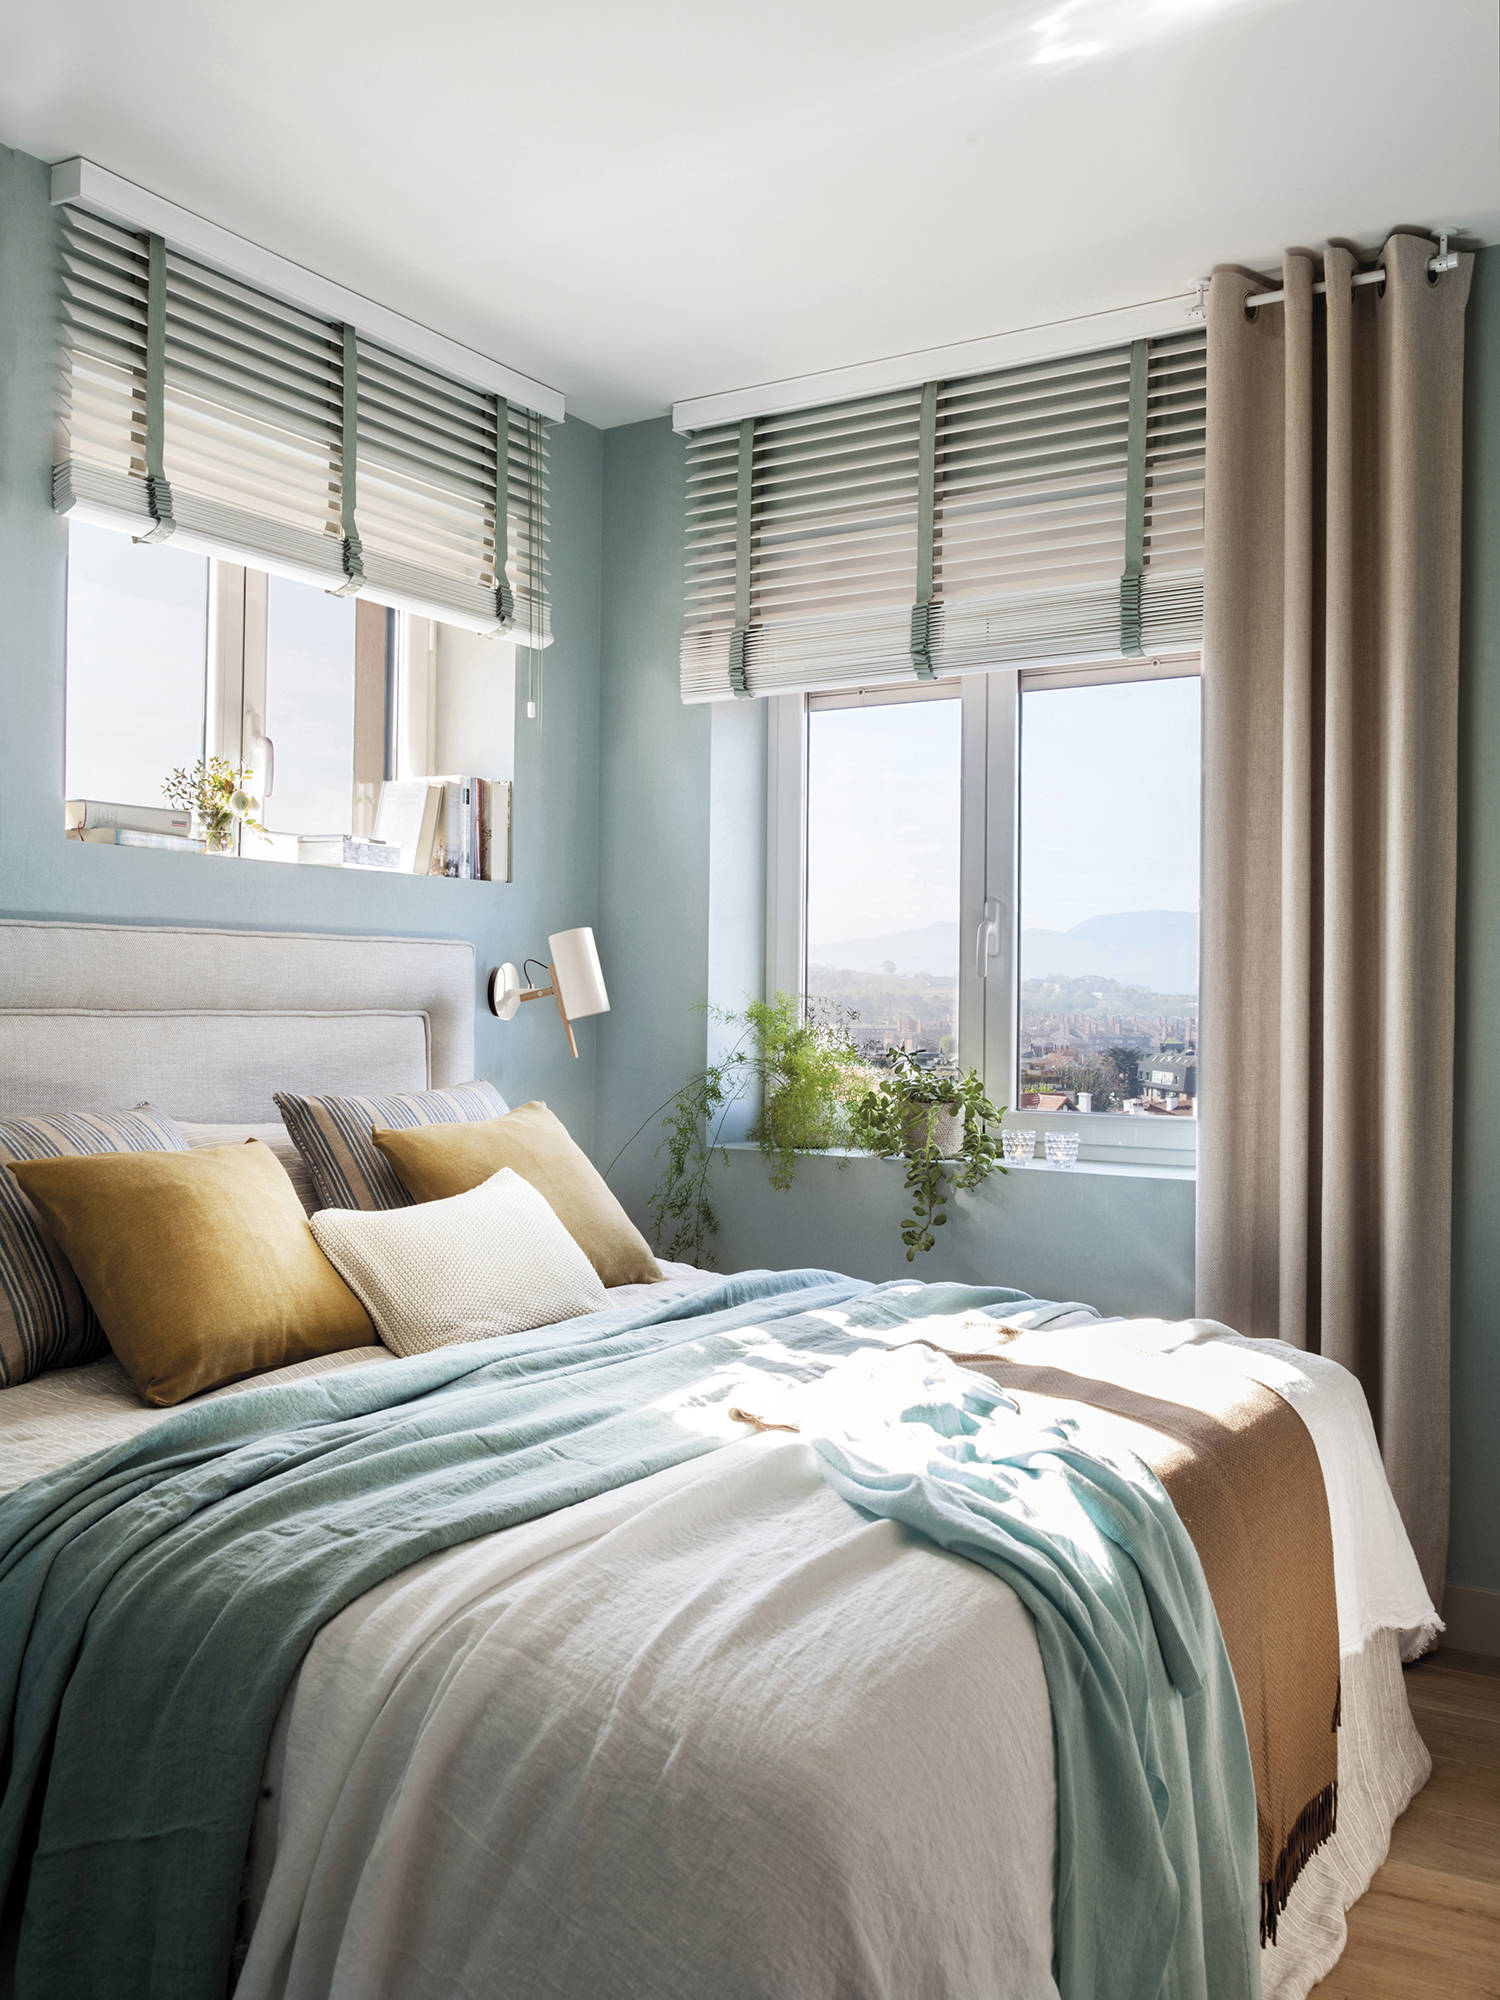 Dormitorio pequeño empapelado en color aguamarina, con cortinas y venecianas.